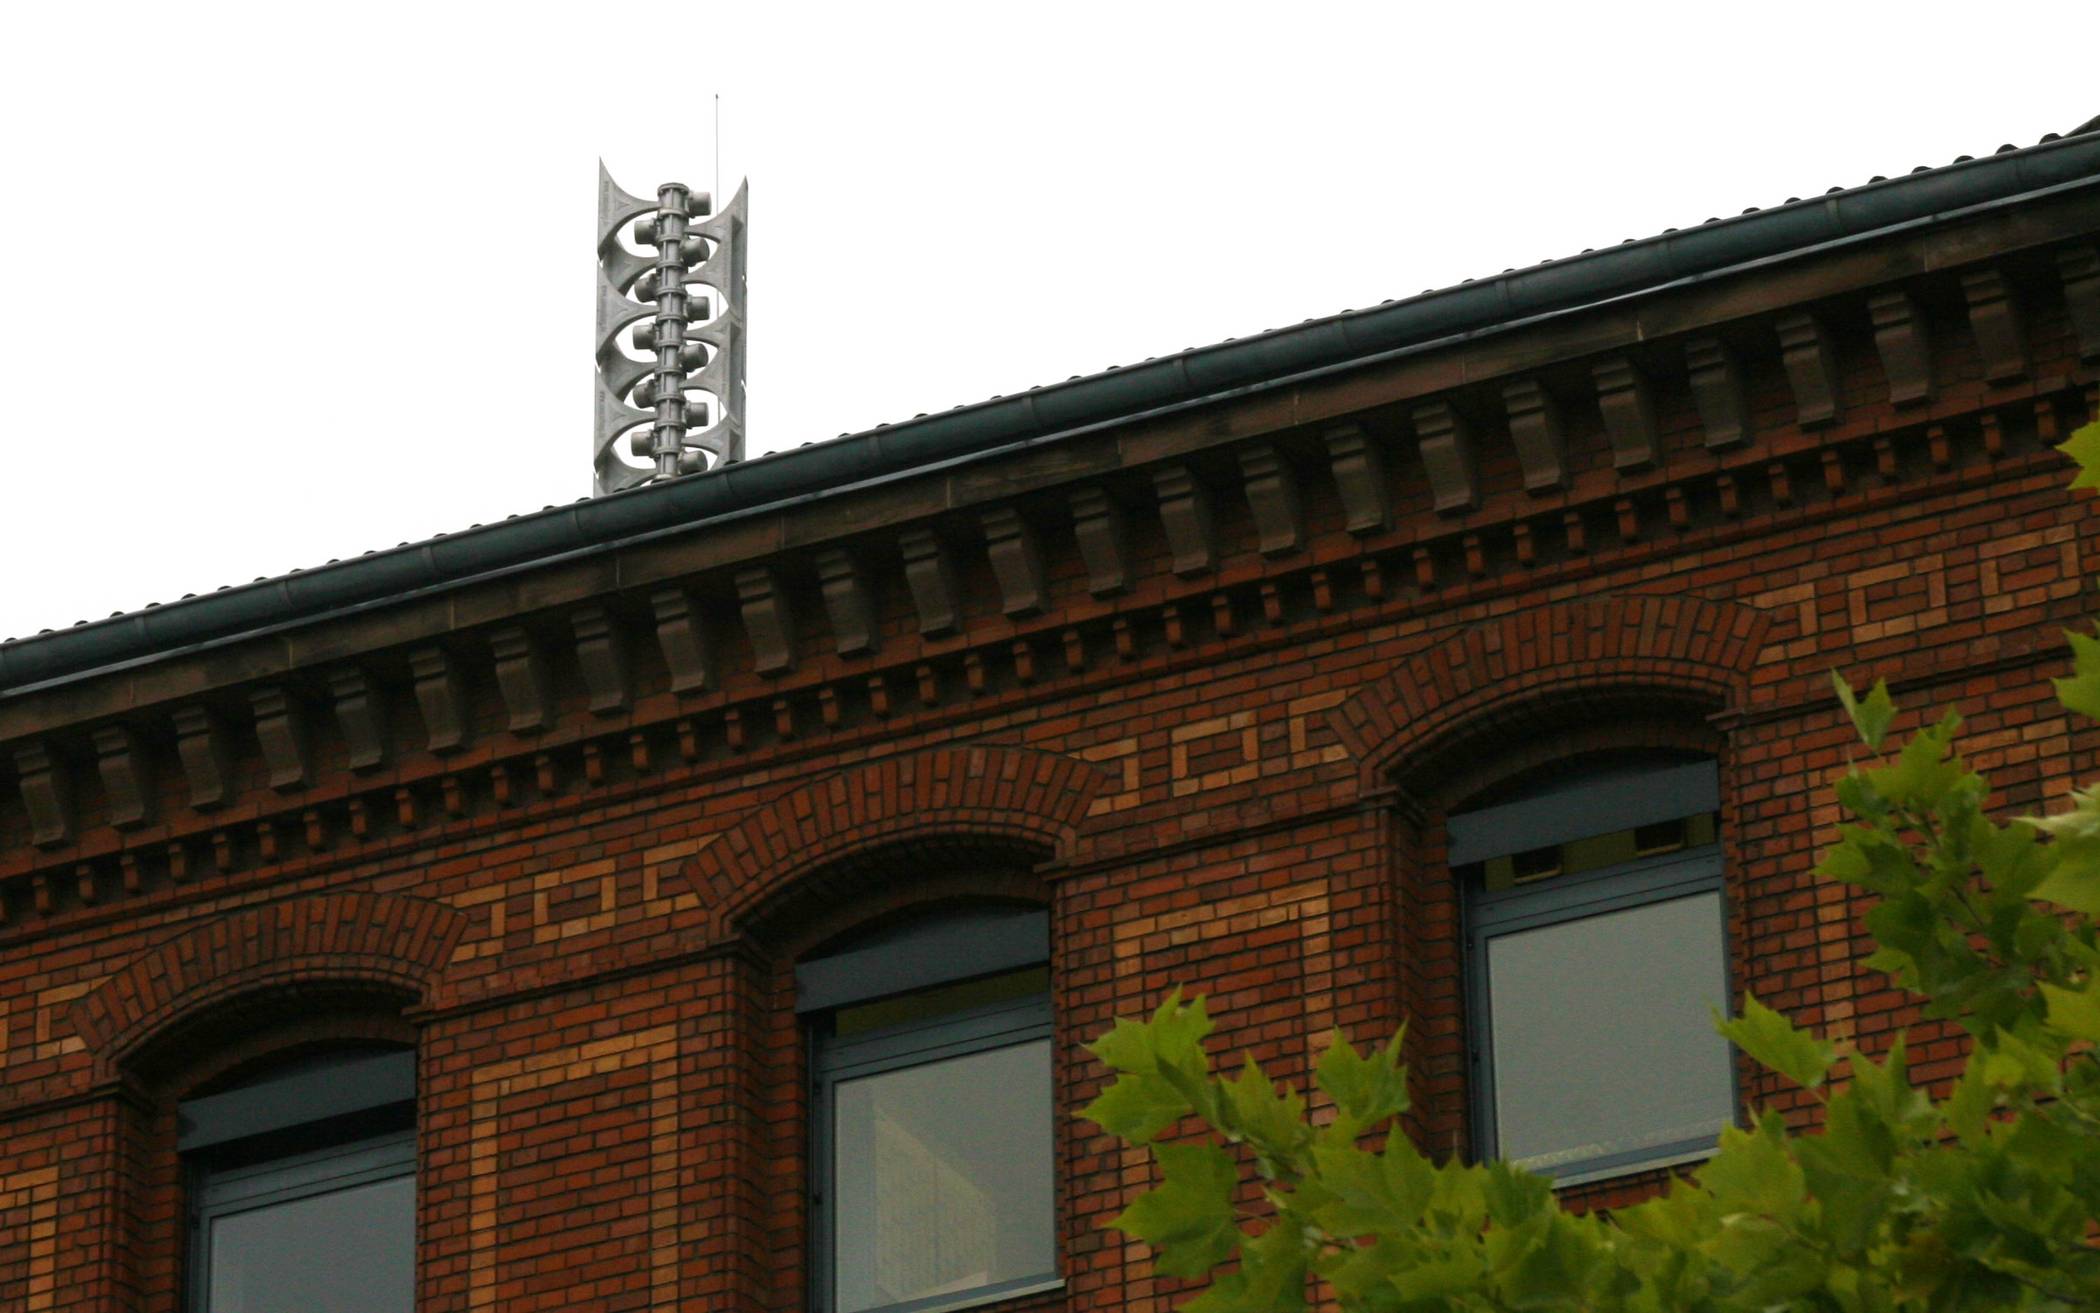  In Mettmann gibt es mehrere Hochleistungssirenen, unter anderem auf dem Dach des Rathauses. 